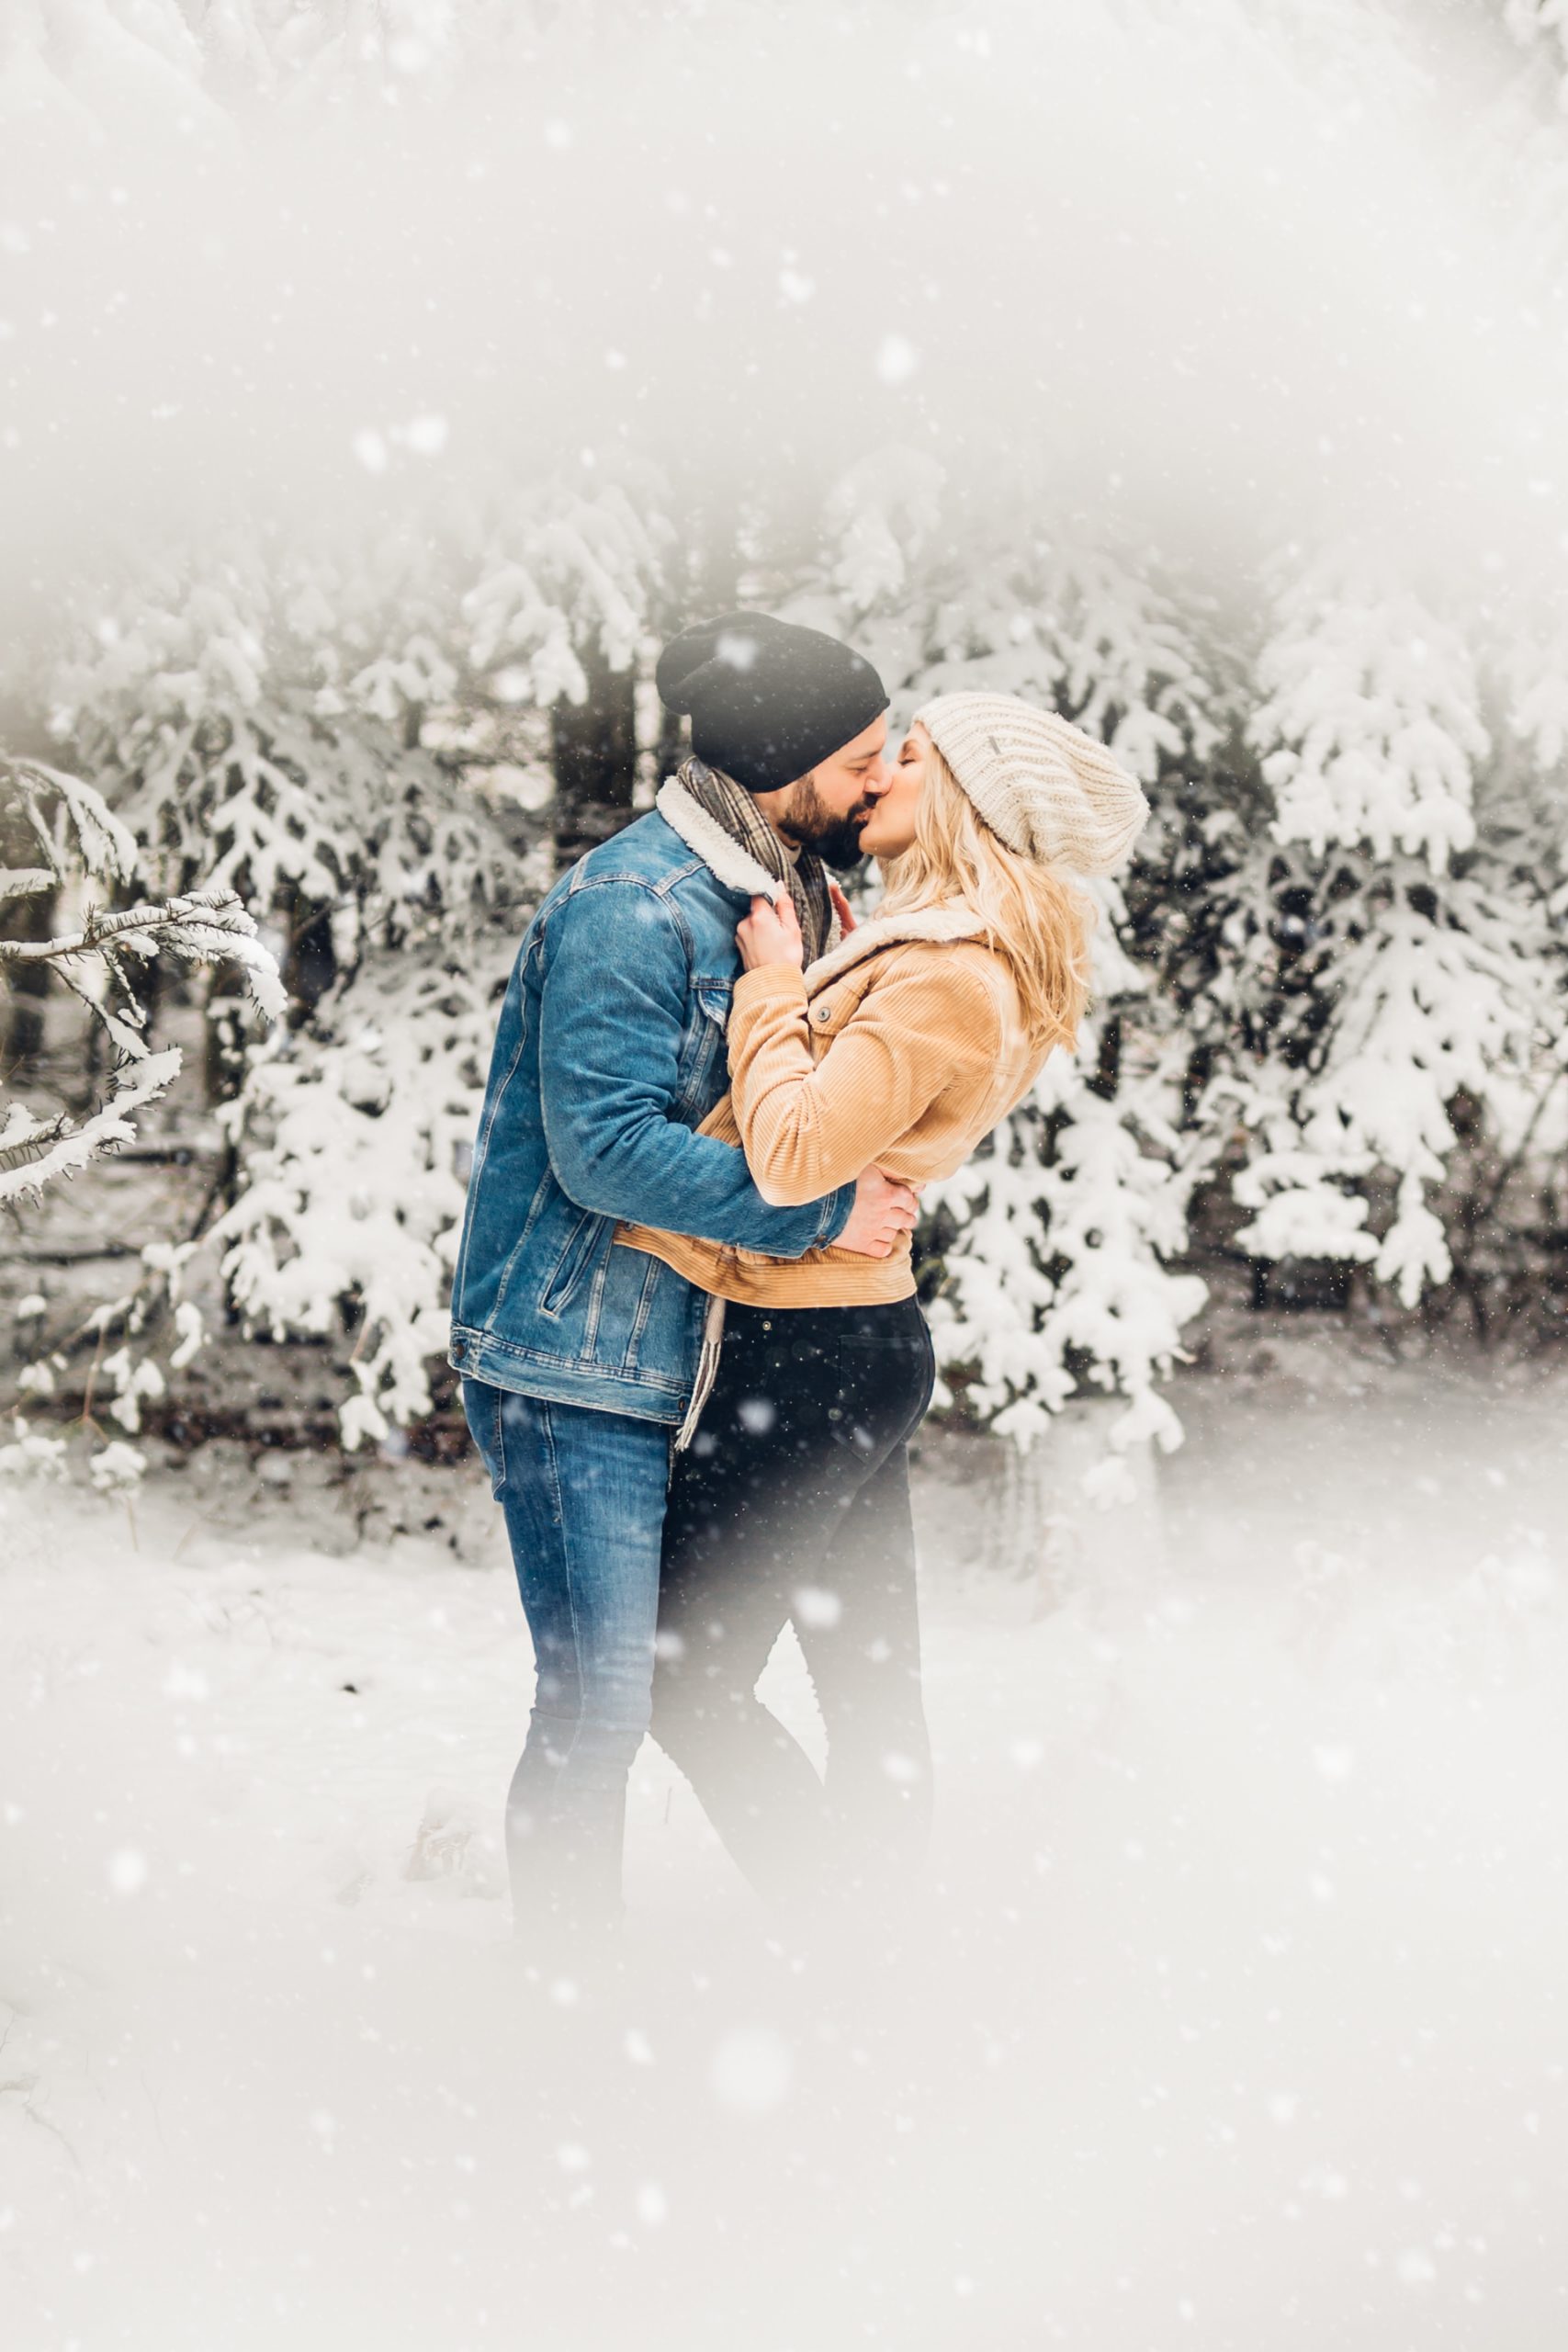 Winterliches Coupleshooting im Winter im Schnee